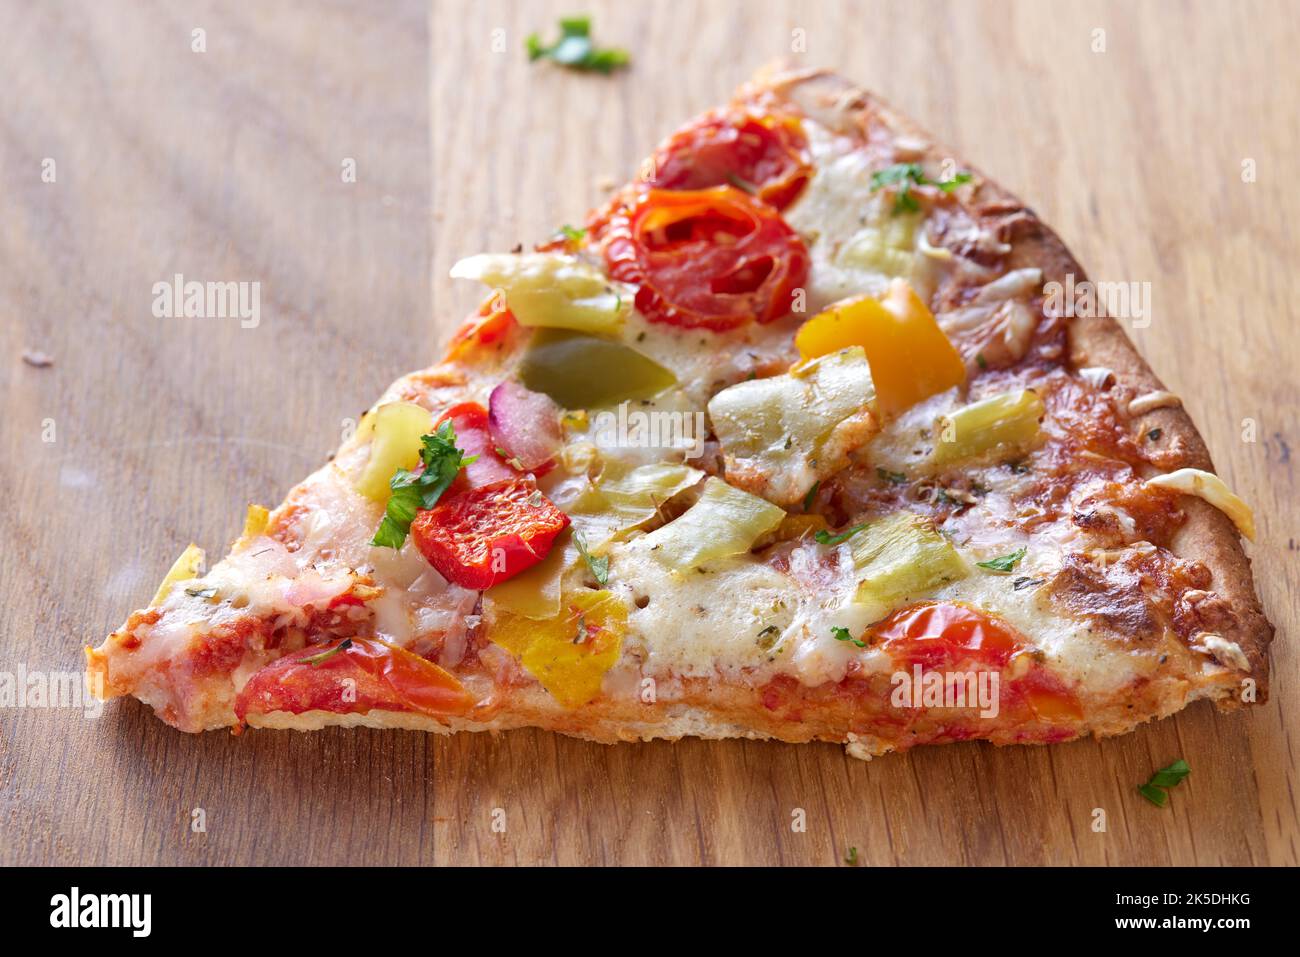 Una porción de pizza con salami, pimientos de pepperoni, tomates y cebollas. Vista de primer plano Foto de stock